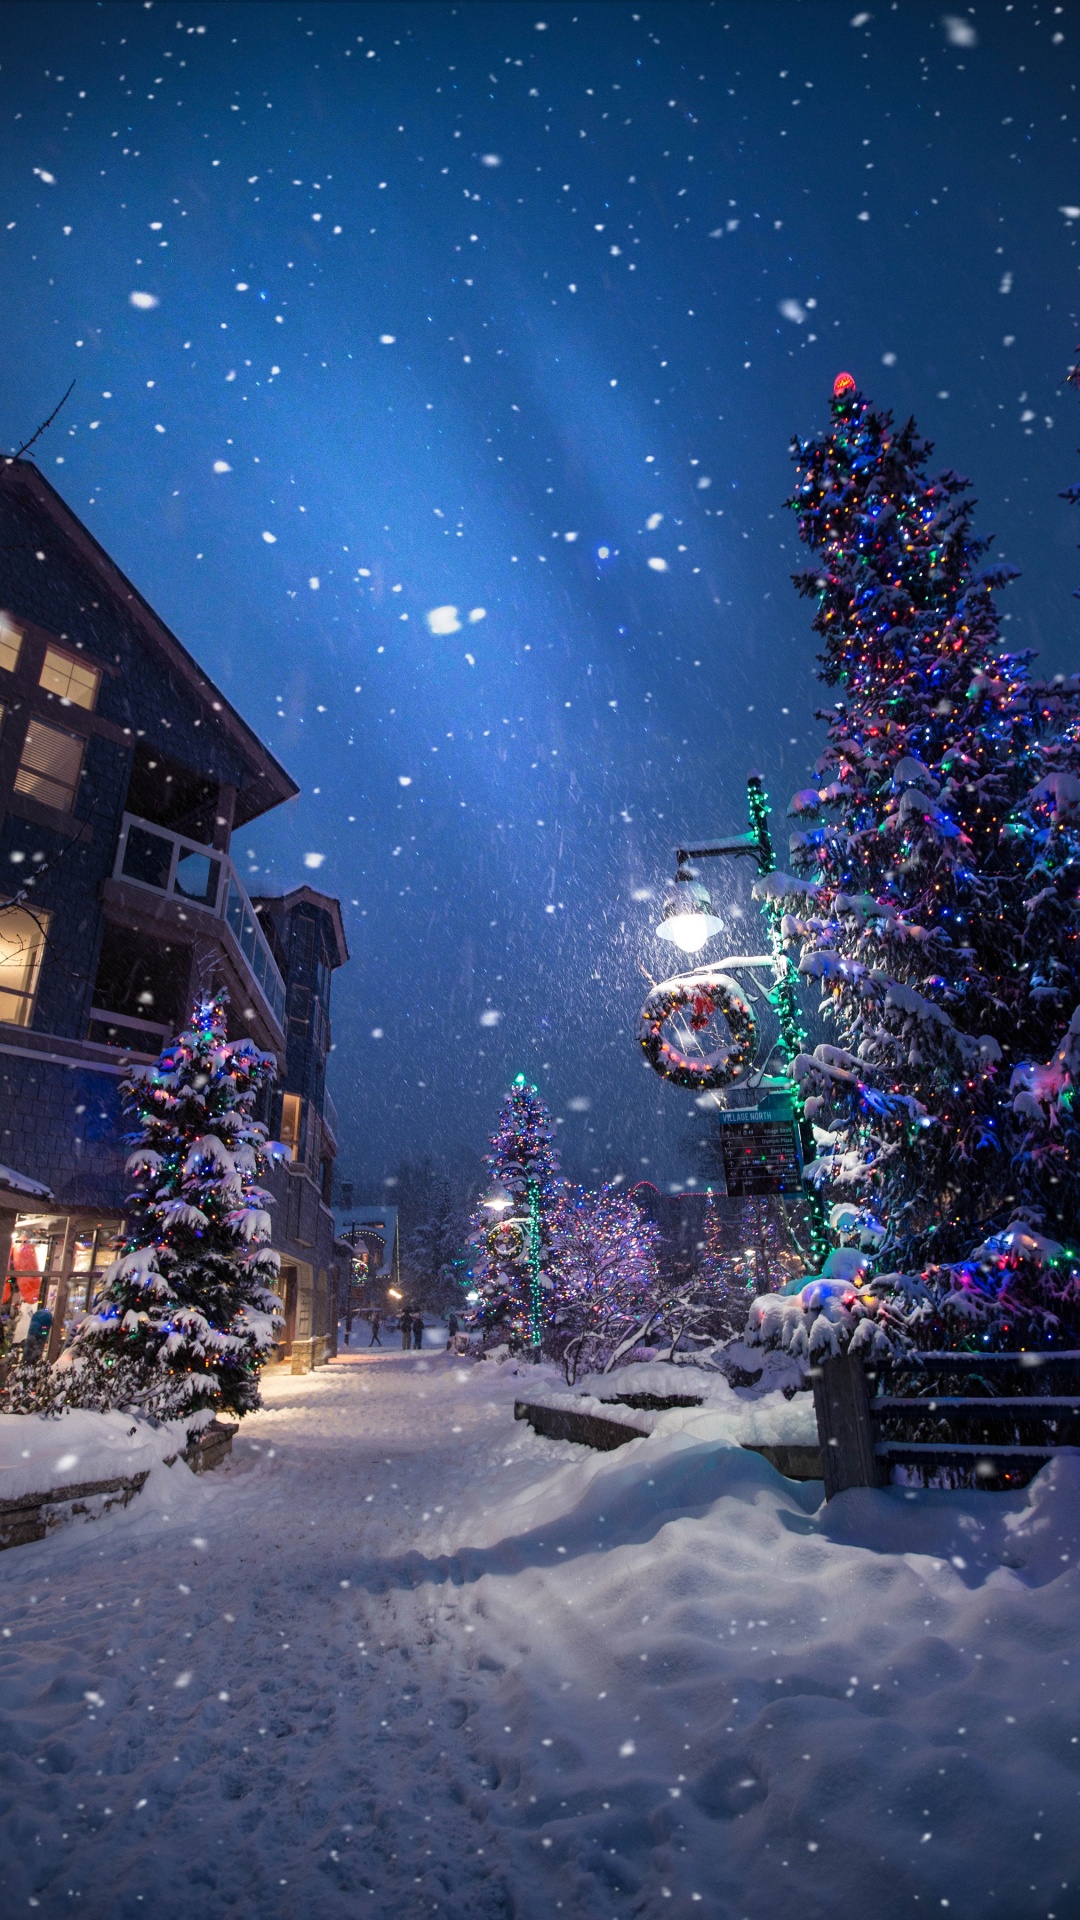 Weihnachten, Weihnachtsbaum, Winter, Schnee, Nacht. Wallpaper in 1080x1920 Resolution